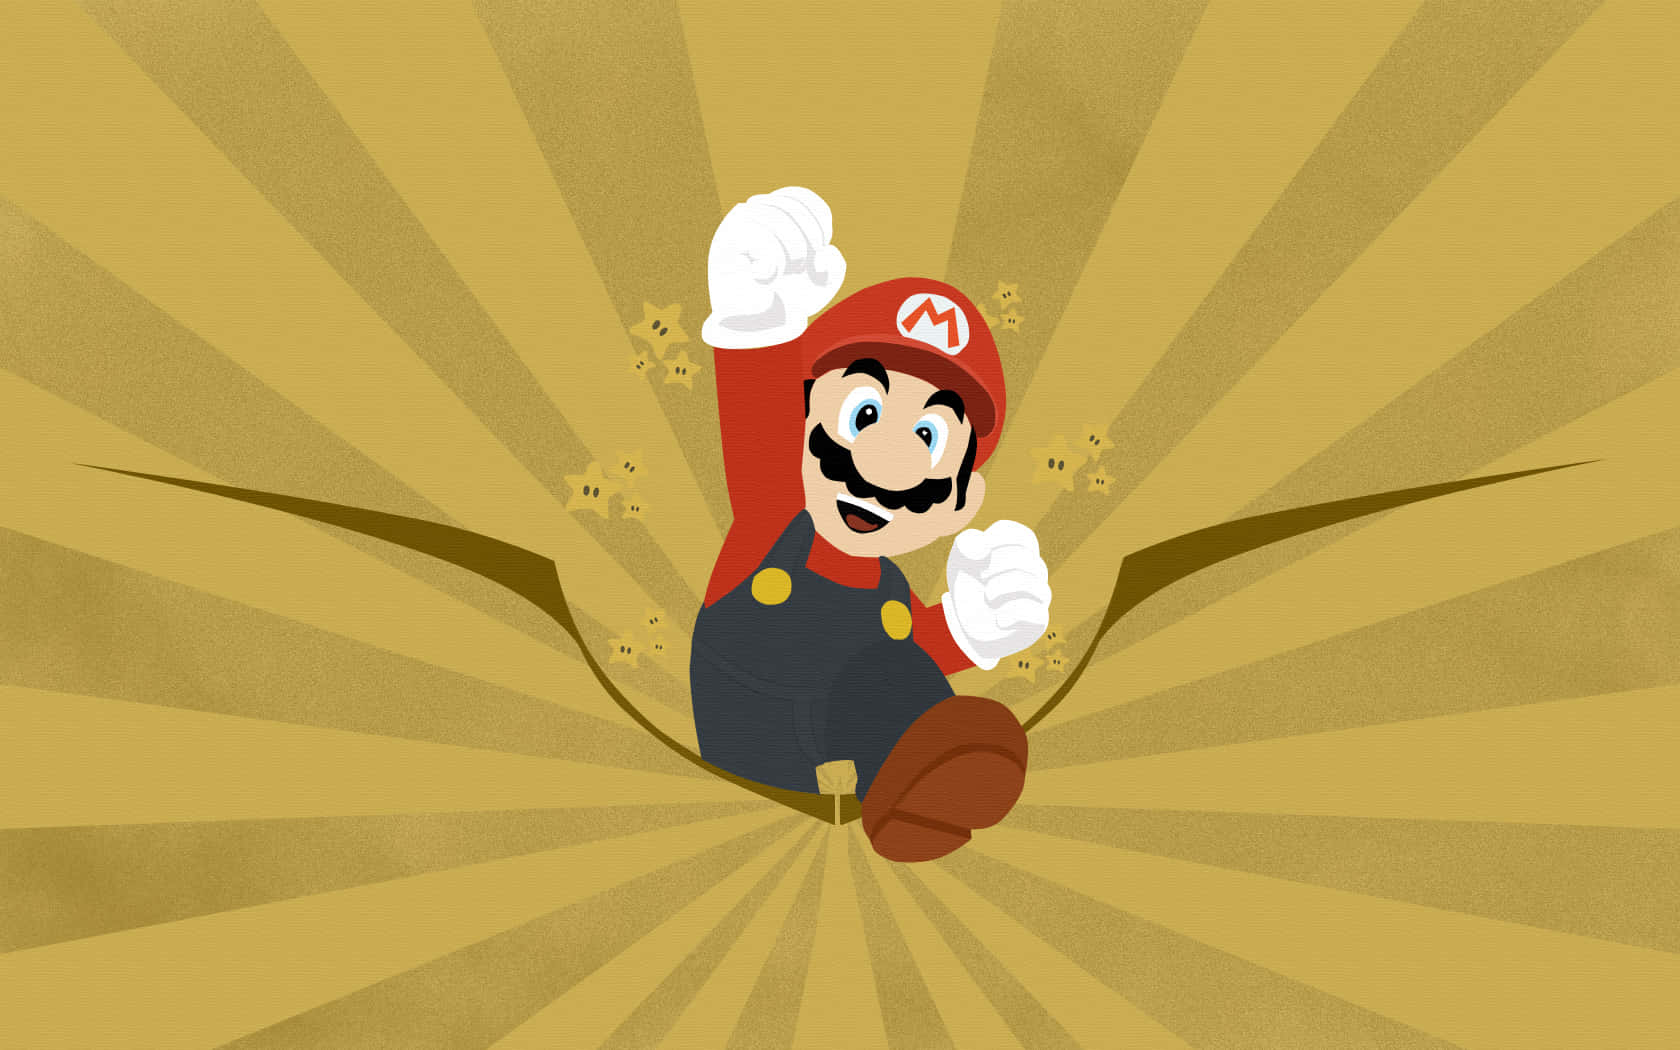 Super Mario der stjæler mønter fra en skattekiste.